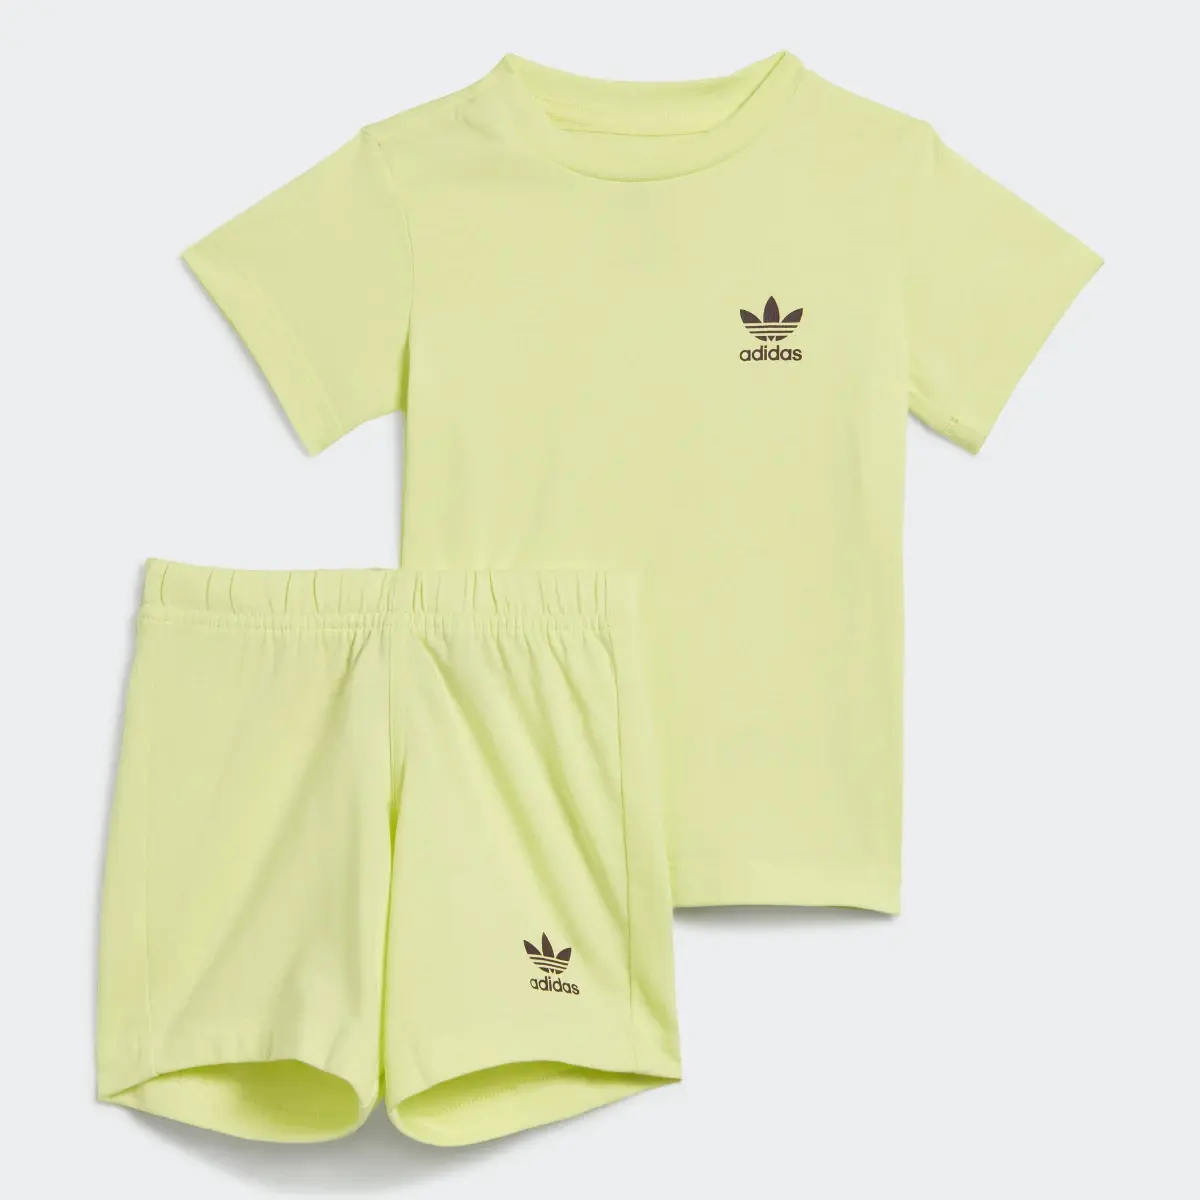 Adidas Shorts and Tee Set. 1